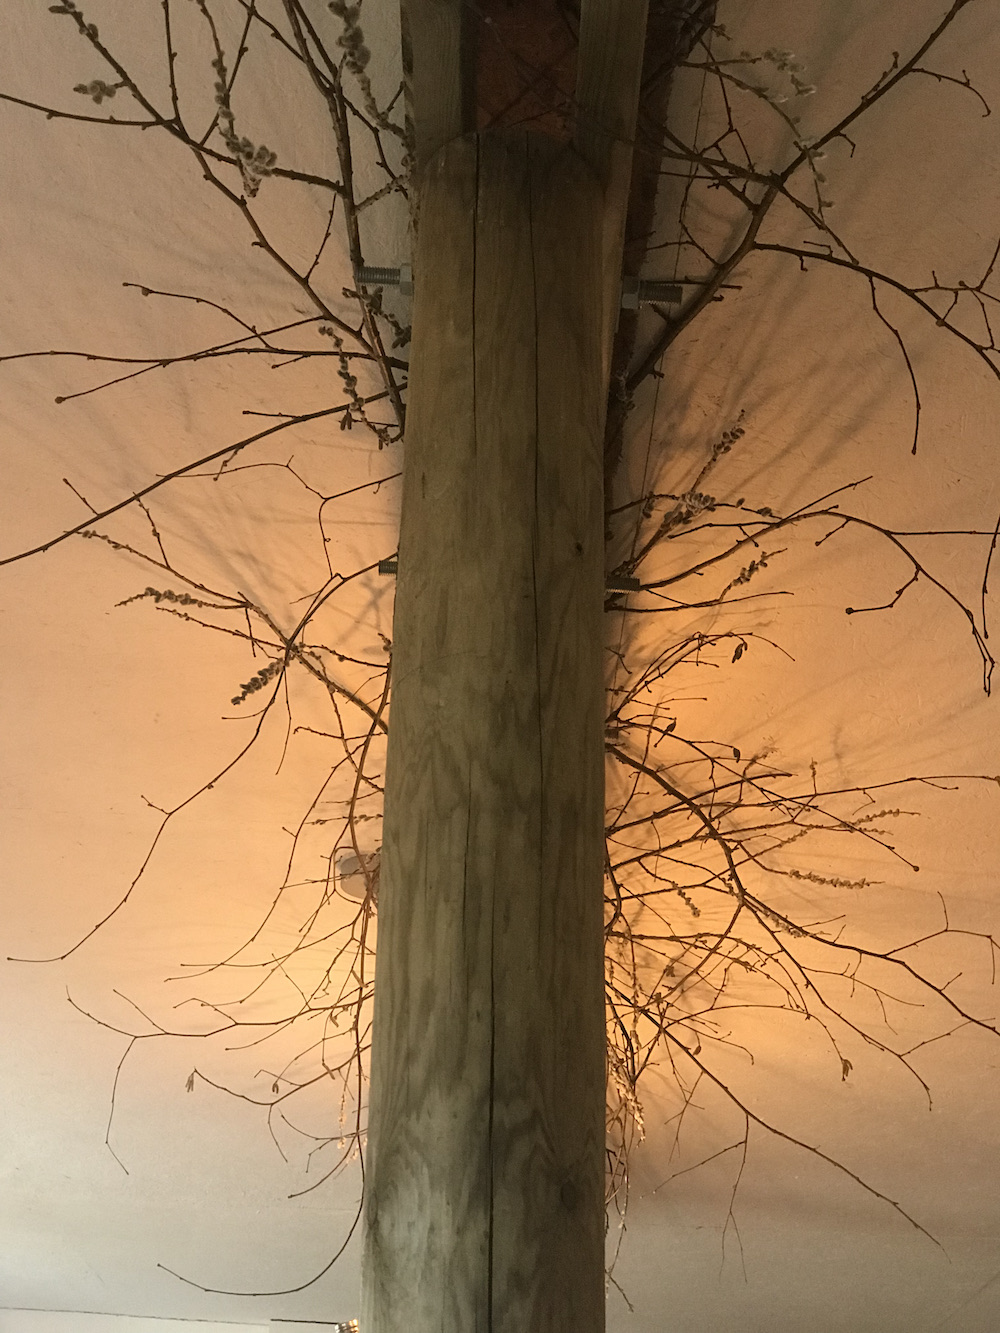 Wooden bream structure with lichen twig installation for Hendy Curzon Gardens, Peach Fuzz